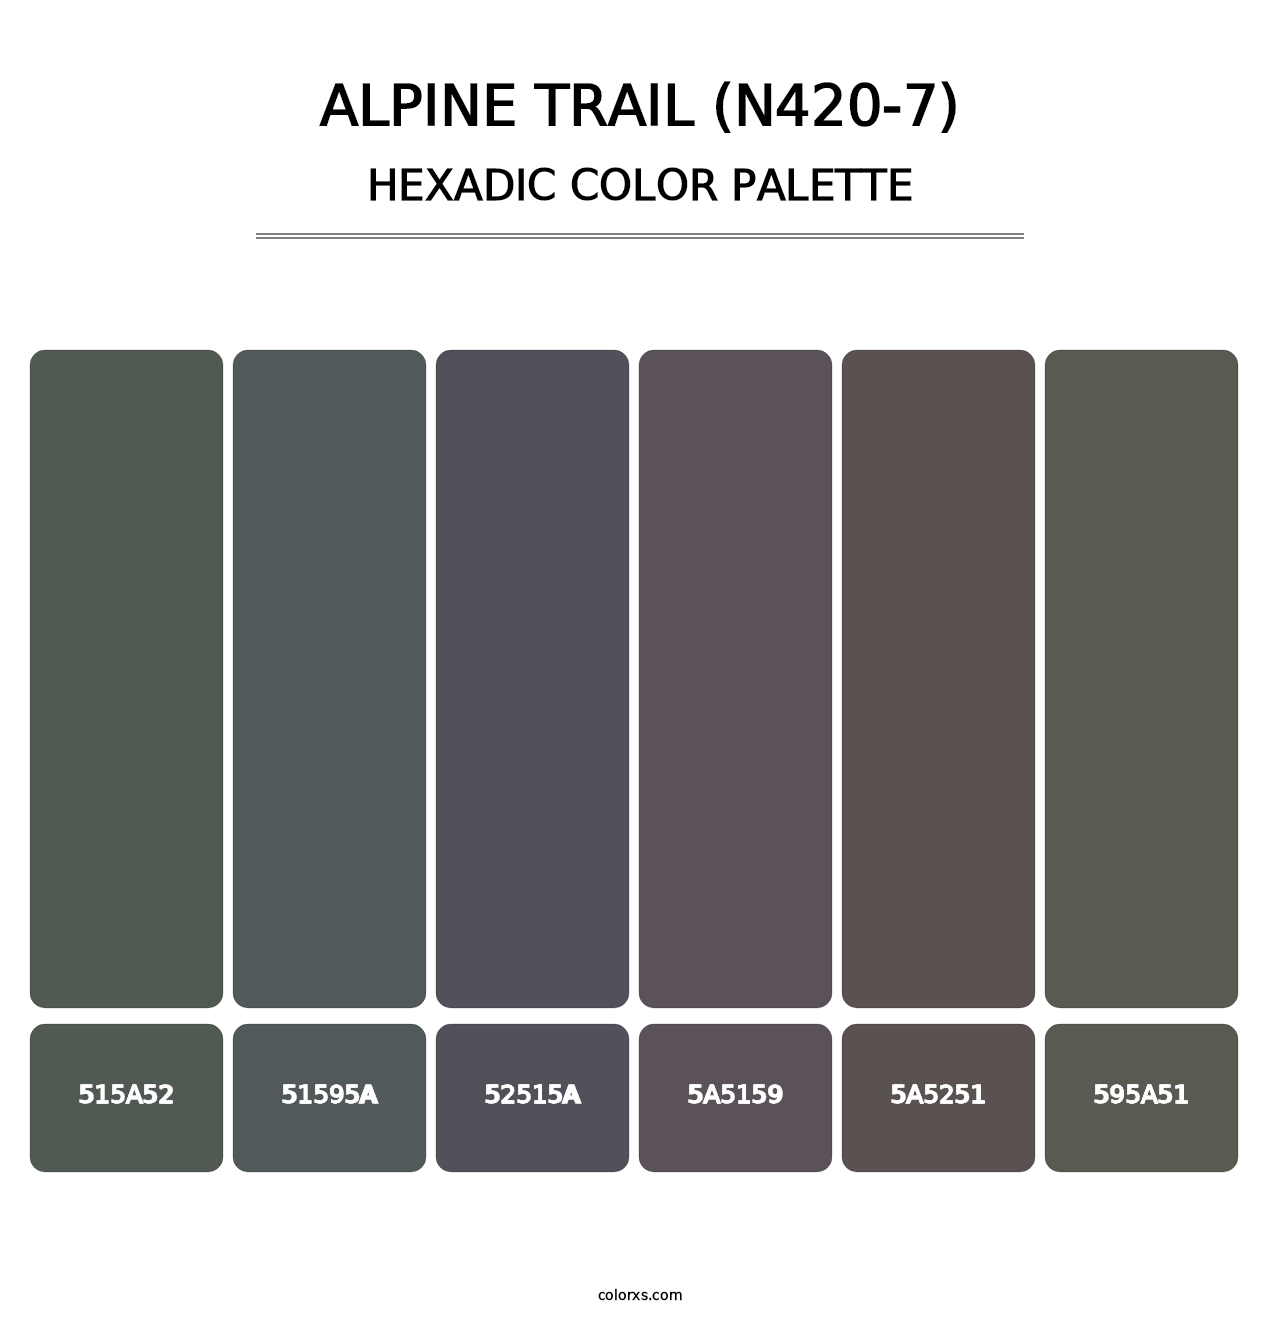 Alpine Trail (N420-7) - Hexadic Color Palette